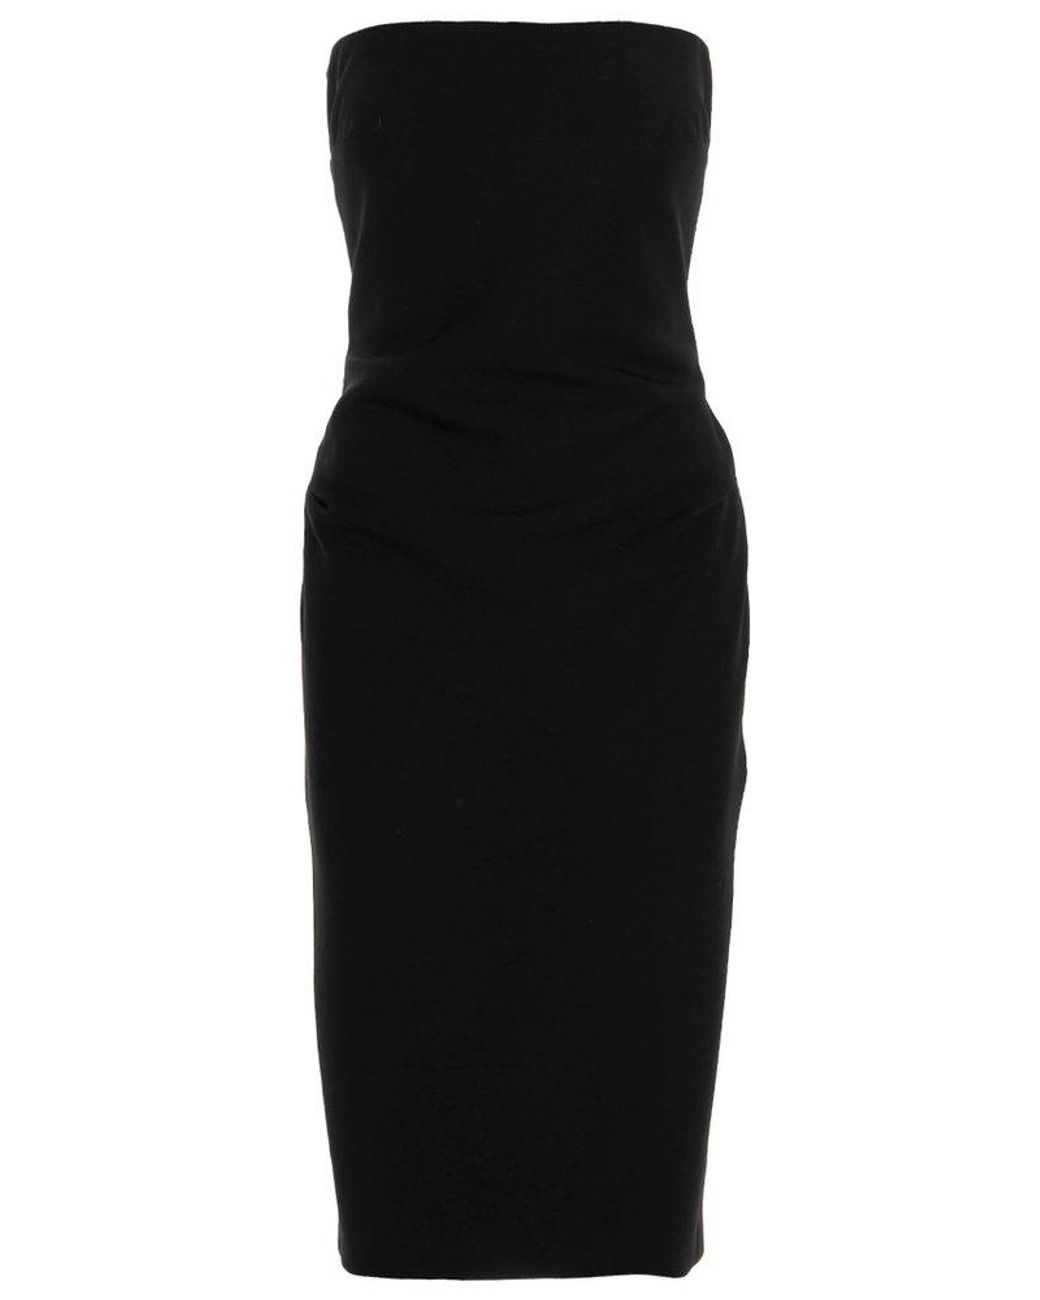 Max Mara Bernard Strapless Dress in Black | Lyst